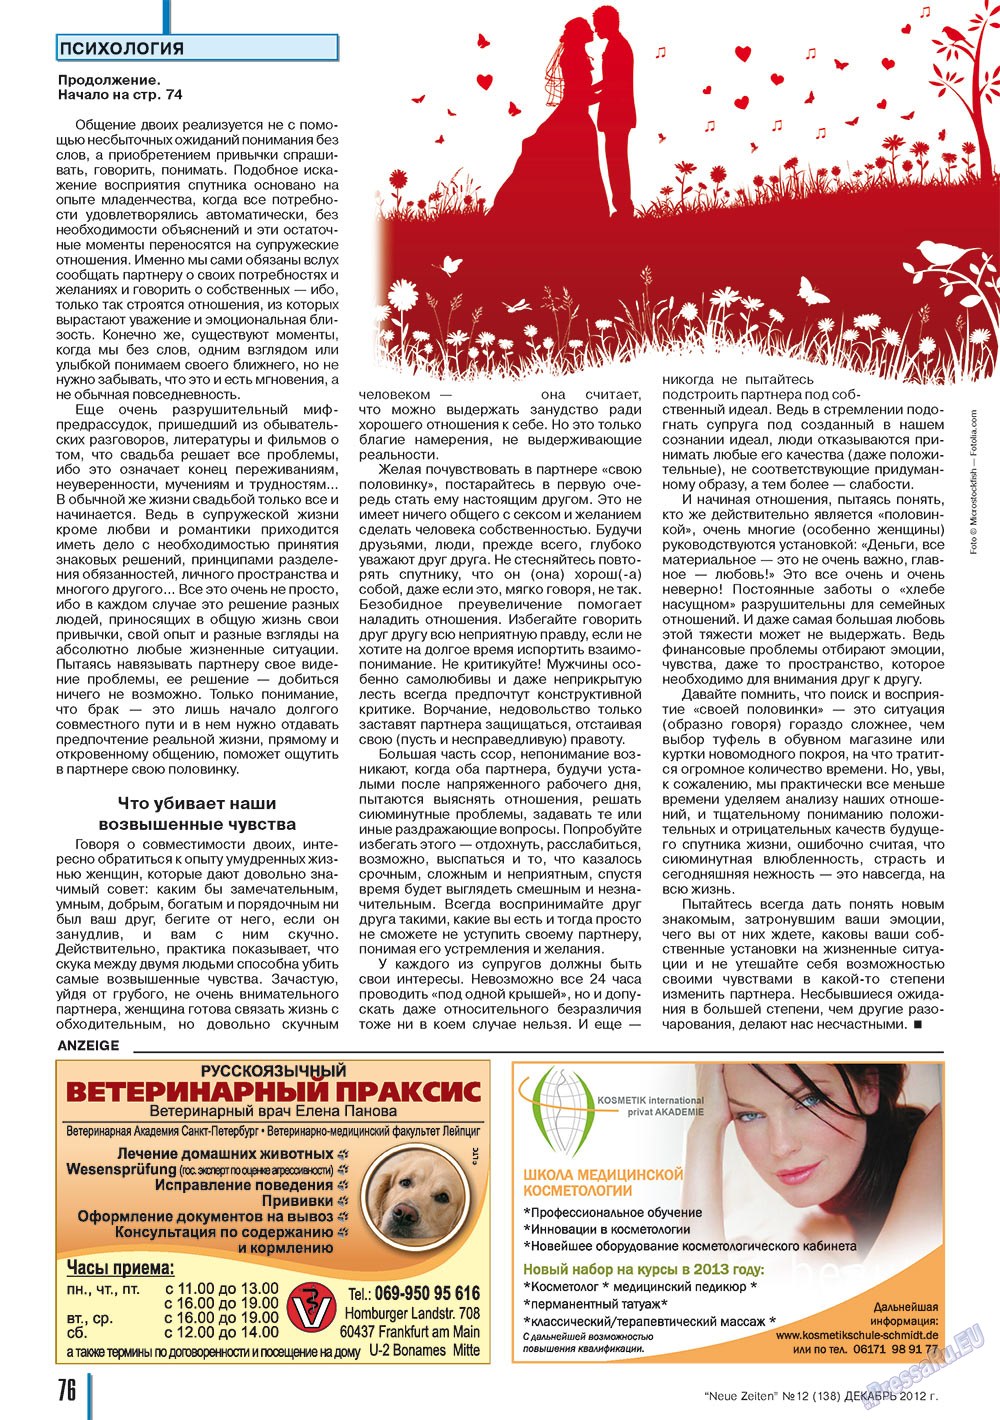 Neue Zeiten, журнал. 2012 №12 стр.76